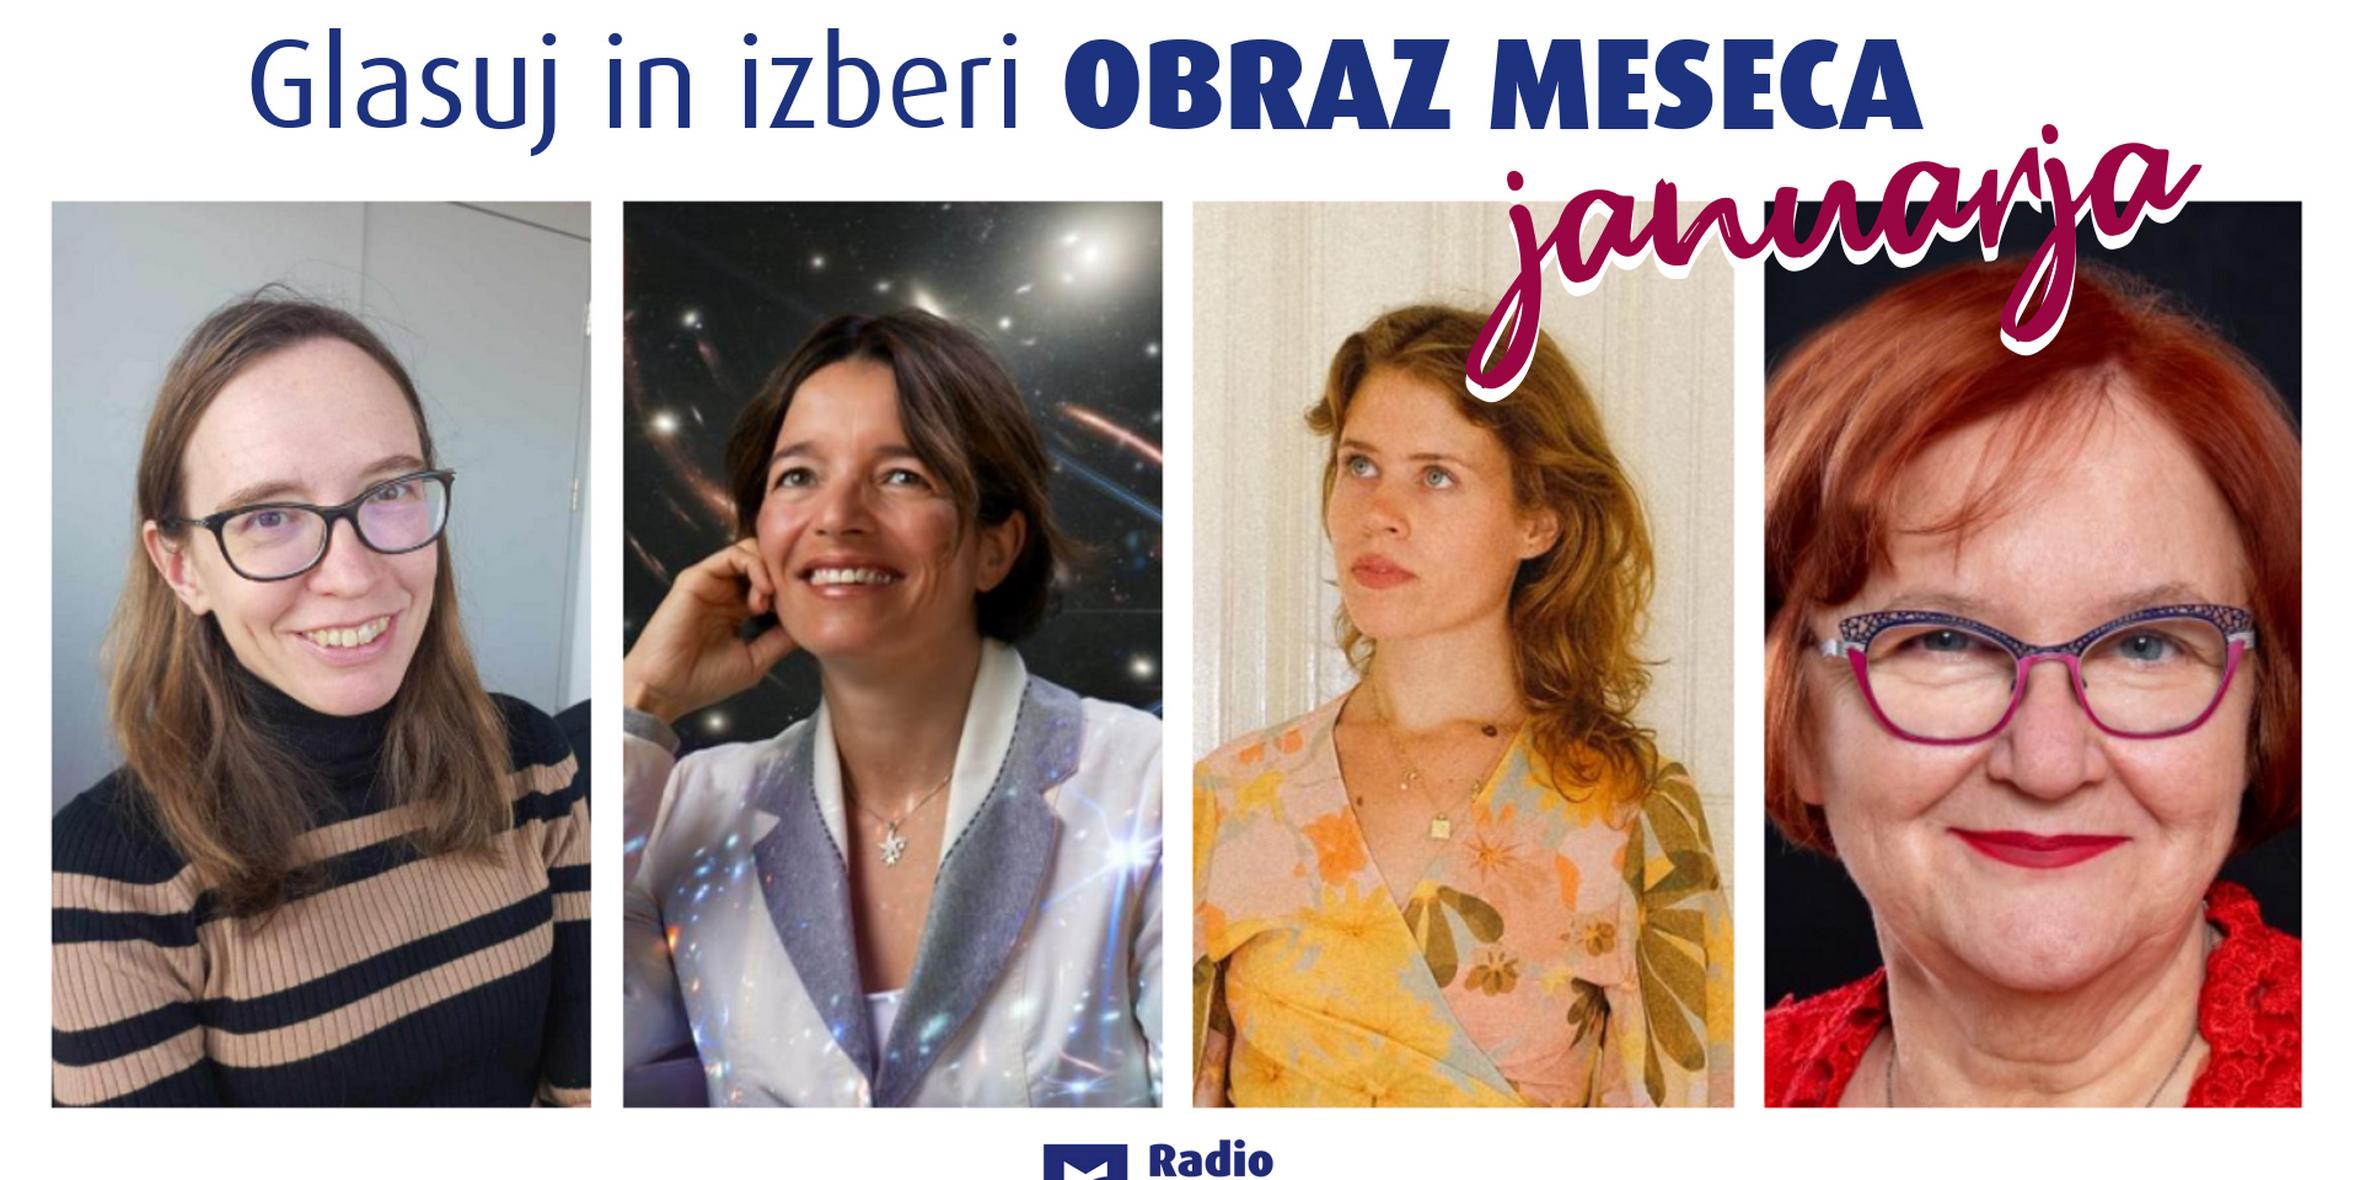 Od leve proti desni: Kristina Dolinar Pavlič, Maruša Bradač, Alja Horvat in Milena Pivec. Foto: Radio Maribor/Manuela Horvat